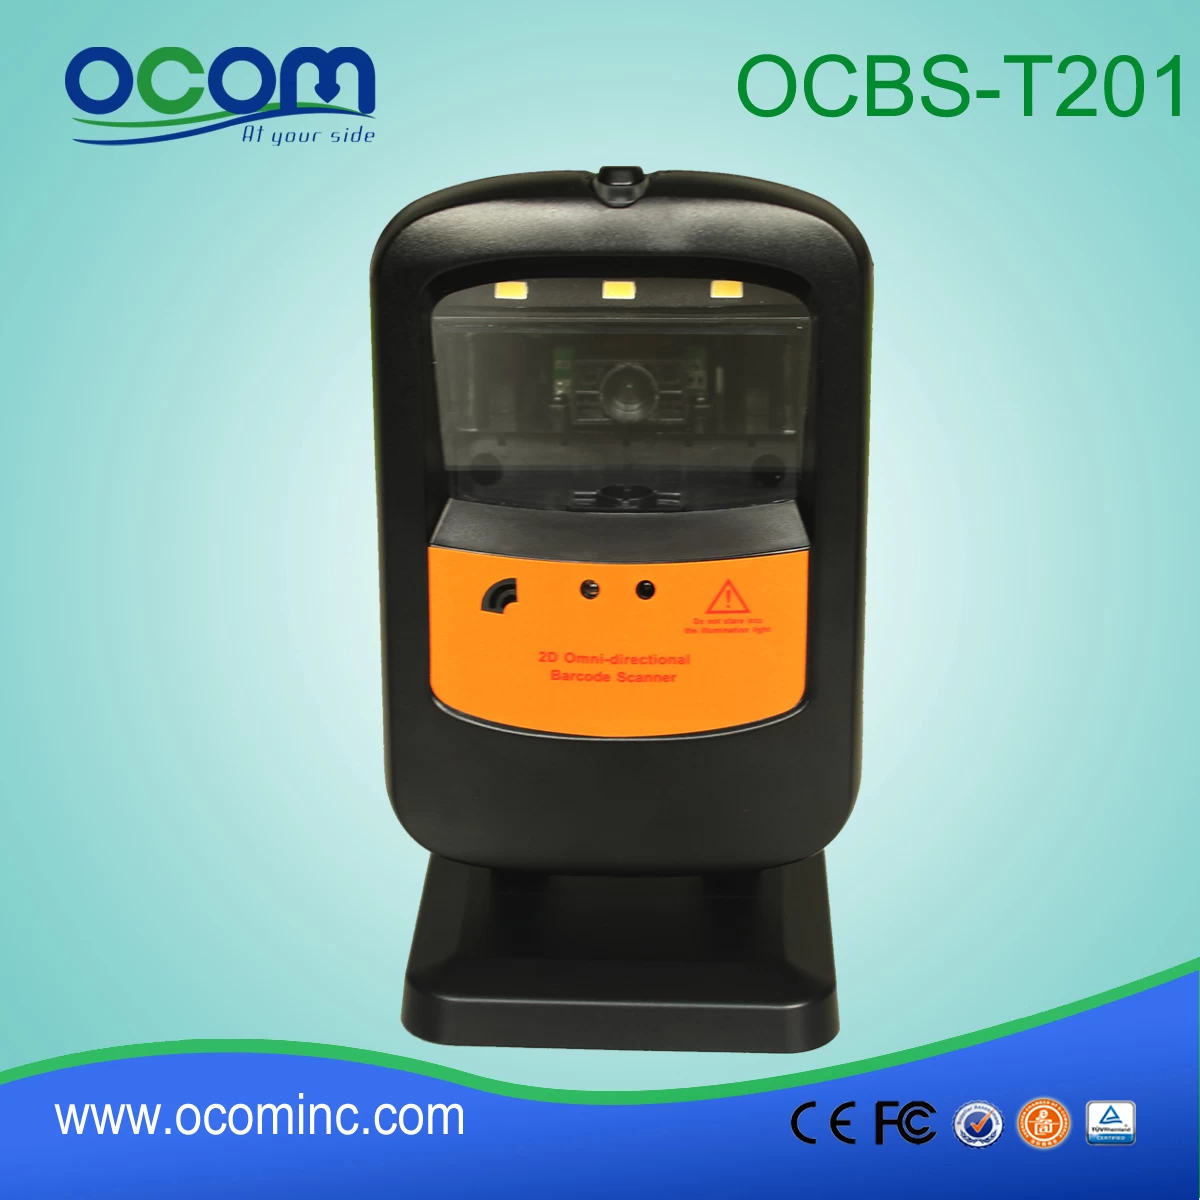 OCBS-T201 Kiosk Barcode Reader Scanner